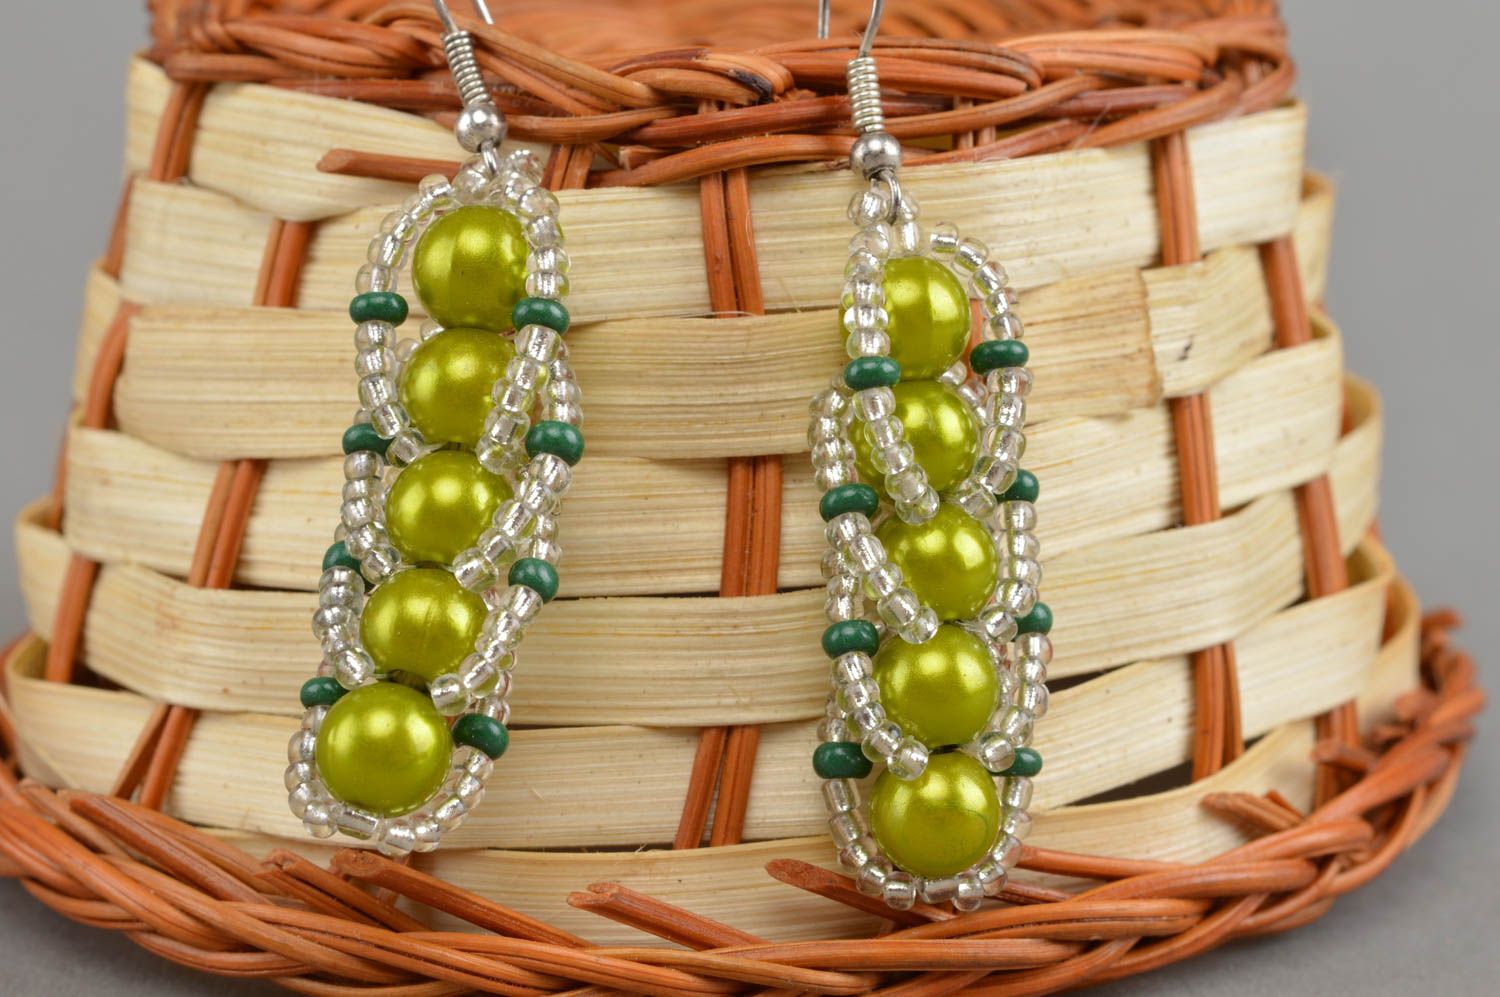 Stylish handmade beaded earrings designer earrings woven of beads gift ideas photo 1